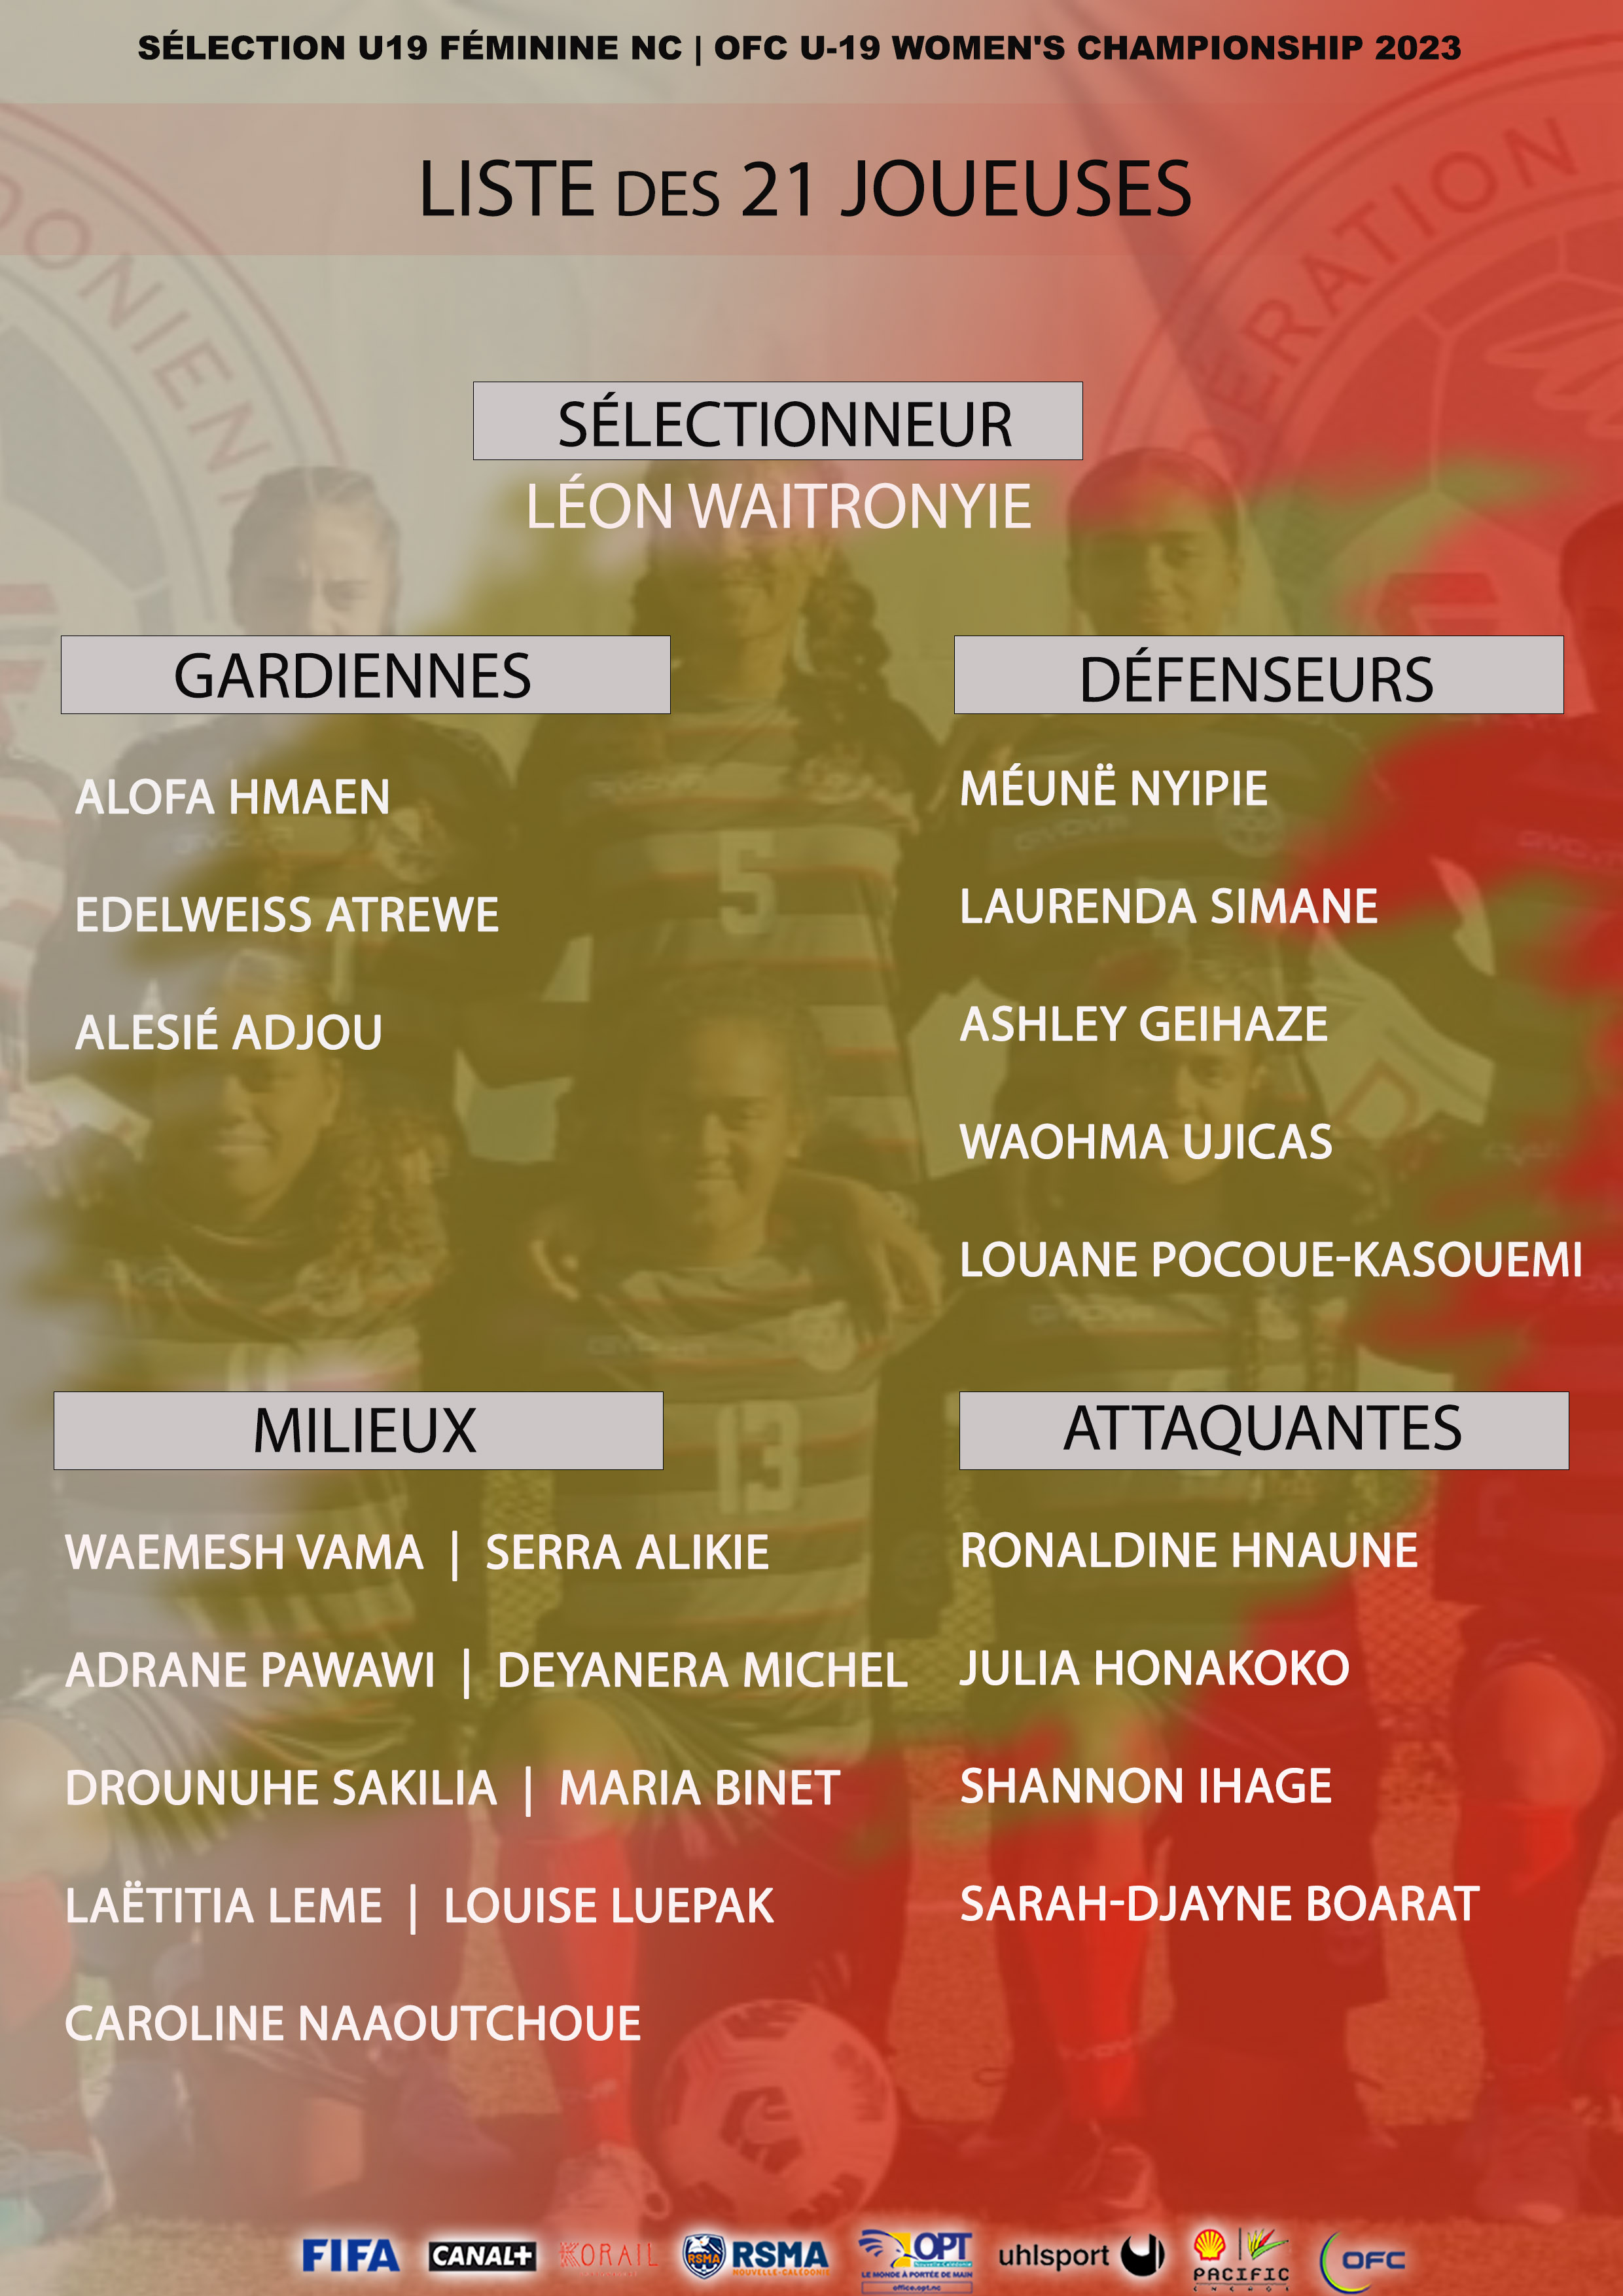 La liste des 21 joueuses calédoniennes | OFC U-19 WOMEN'S CHAMPIONSHIP 2023